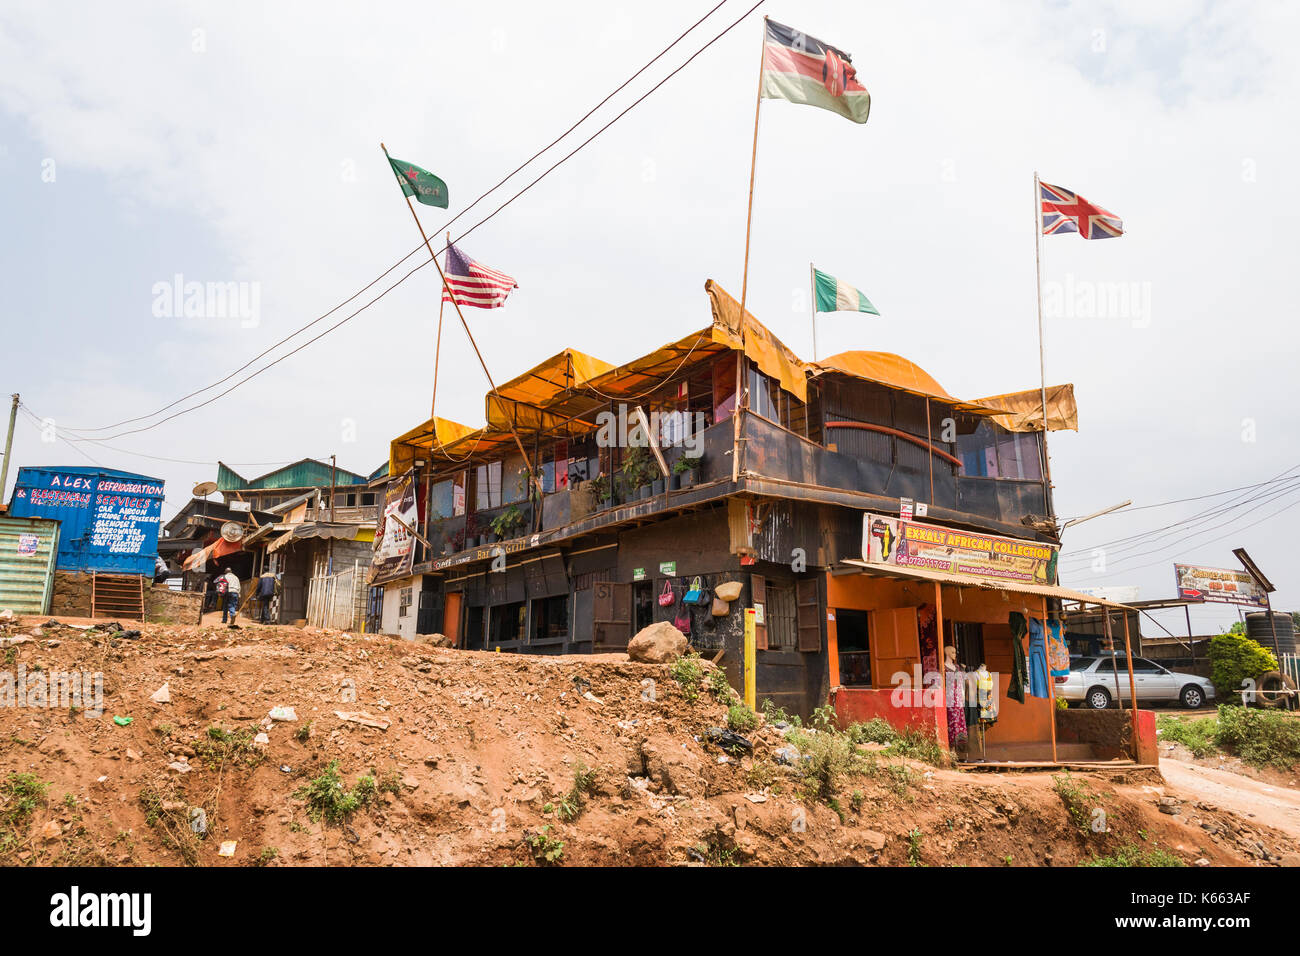 Bâtiment avec divers magasins avec les drapeaux des pays forme du toit, au Kenya Banque D'Images